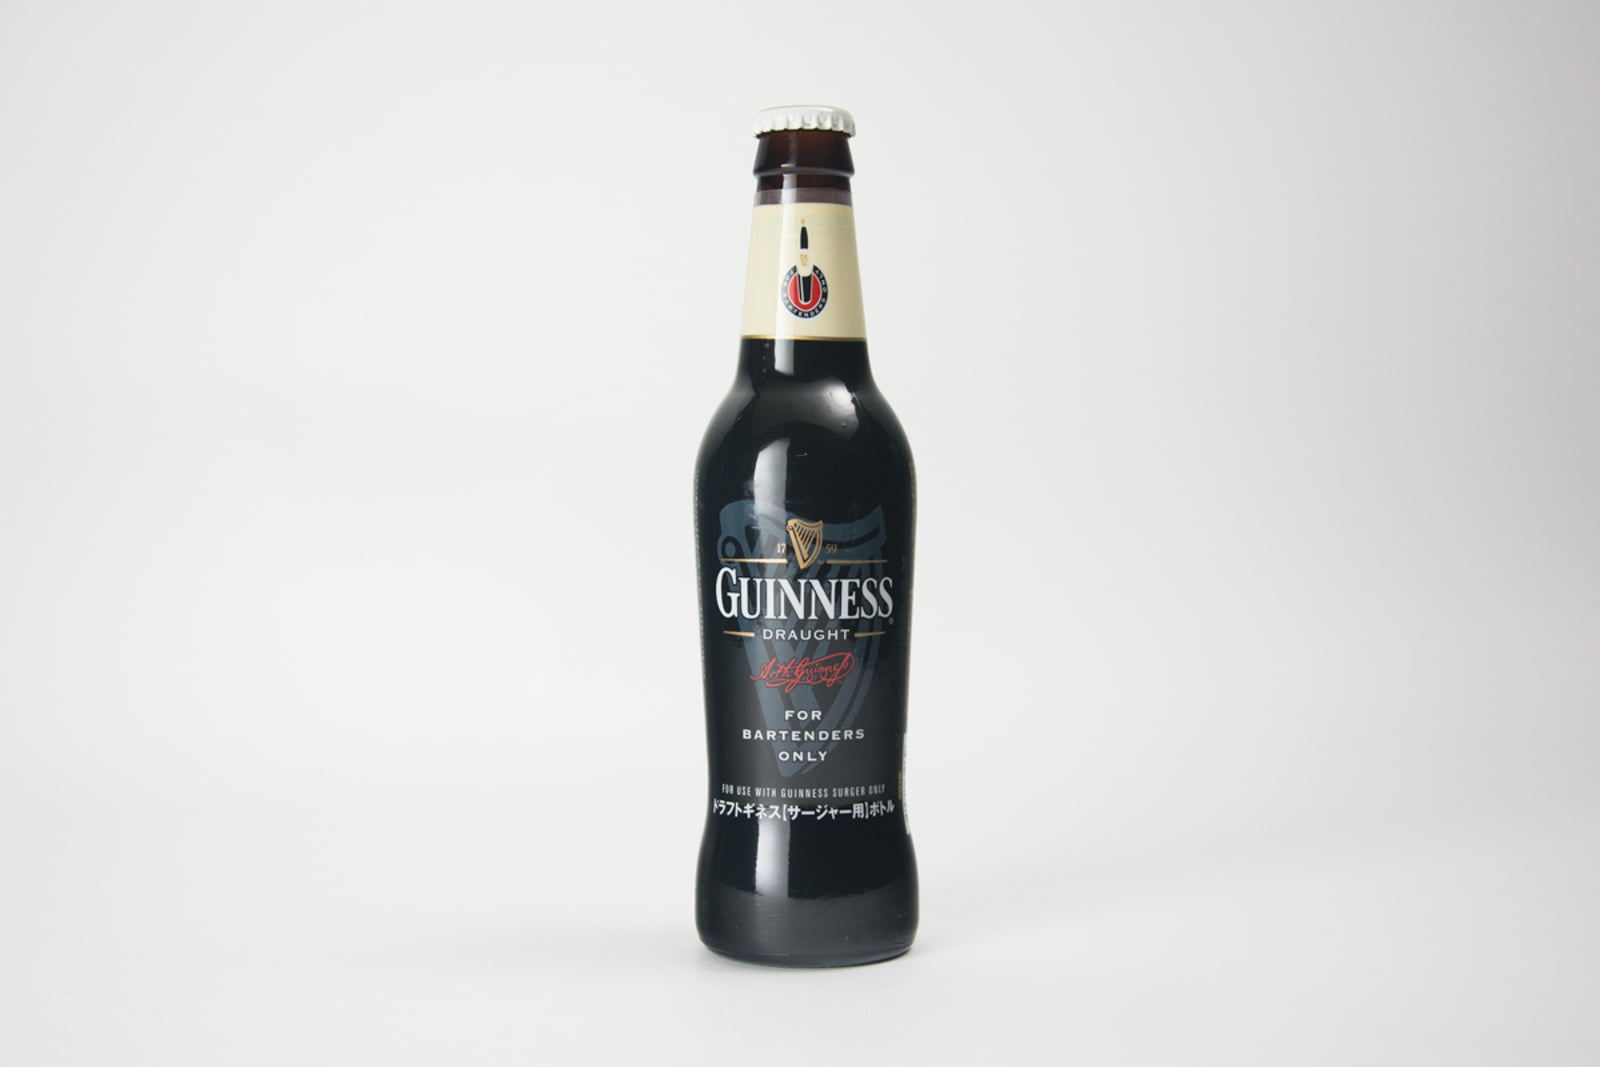 Guinness Draught "For Bartenders Only" Bottle (Japan), 330 ml